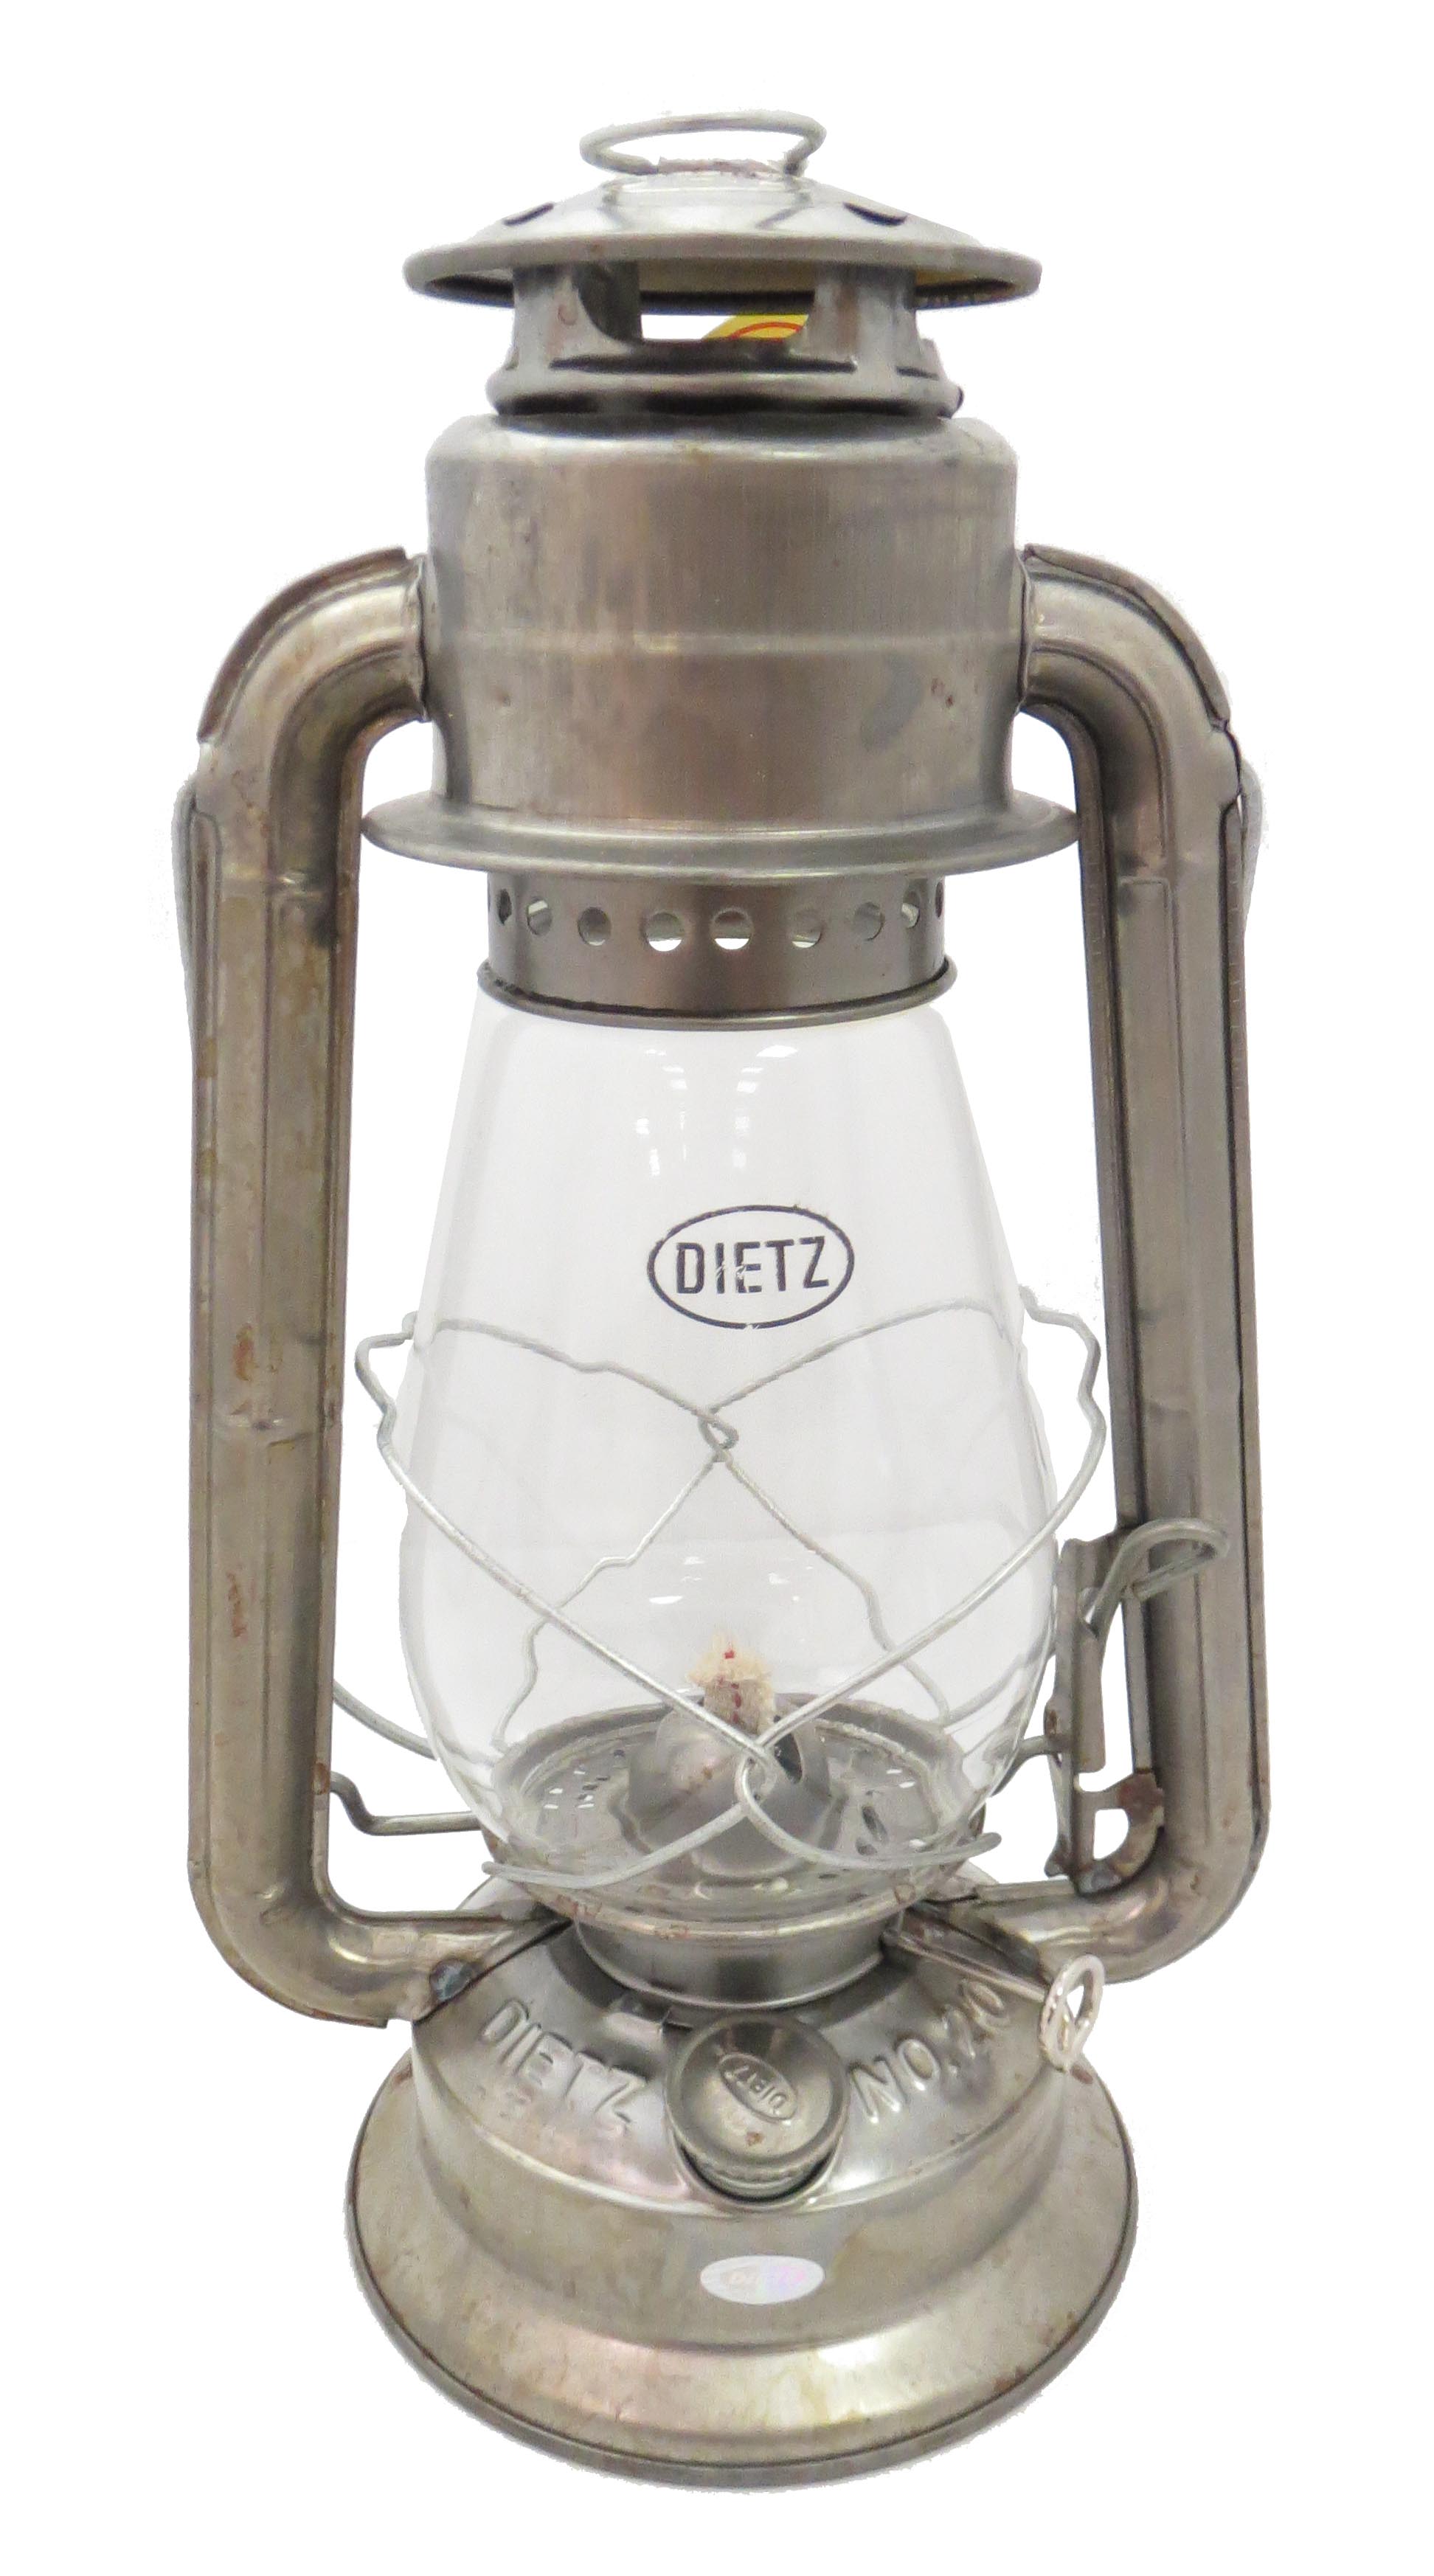 Dietz Blizzard Lantern: What's the Best Way to Trim a Lantern Wick? 